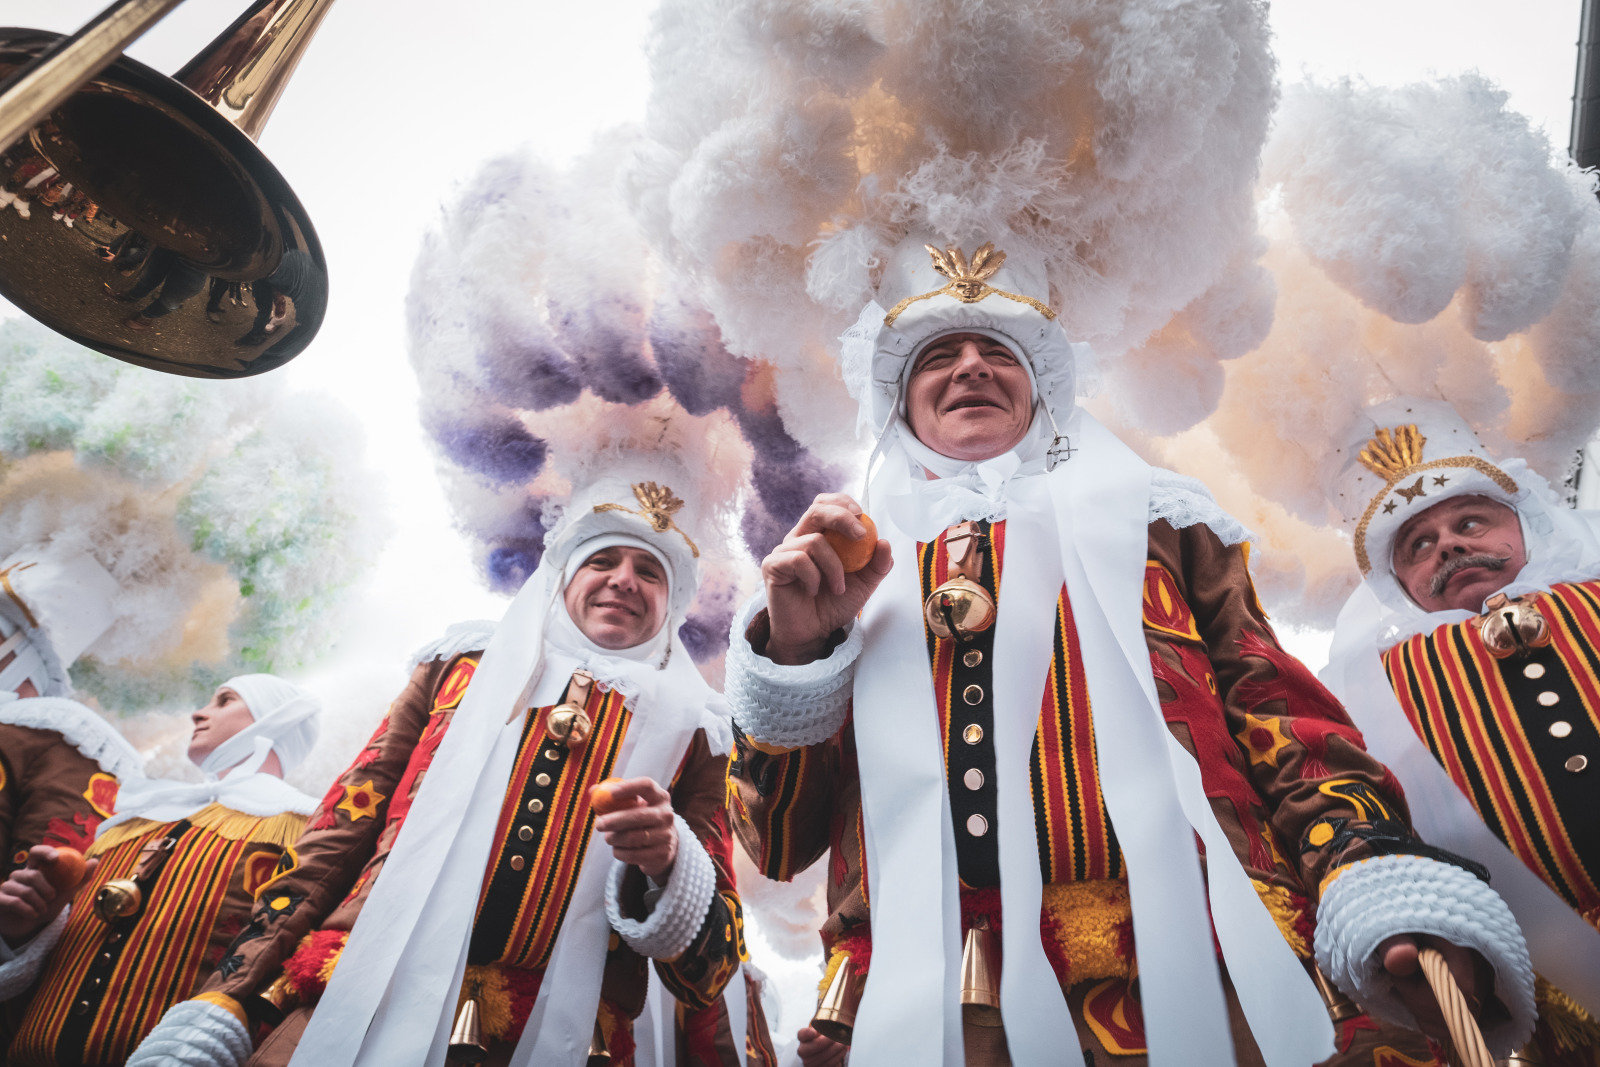 Hommes avec costumes traditionnels au carnaval de Binche